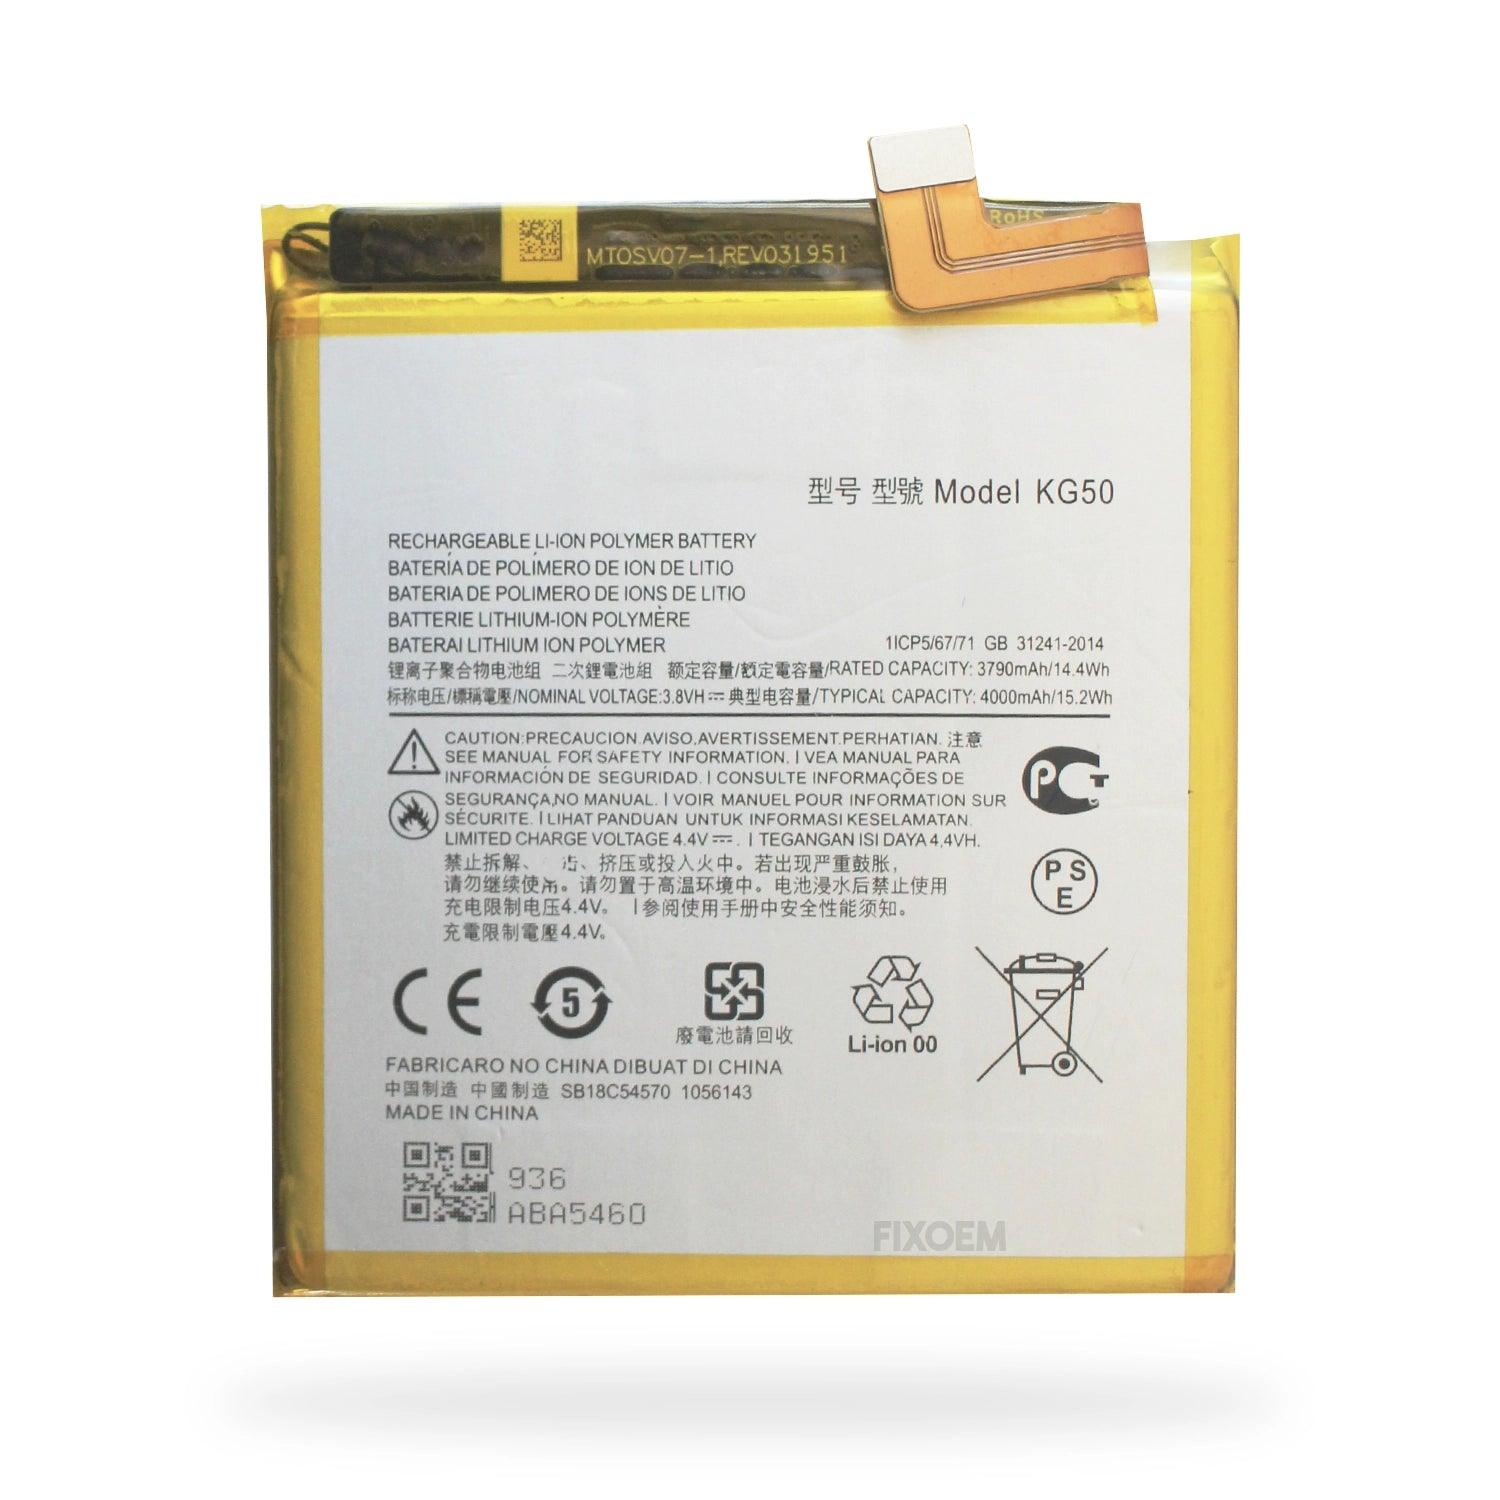 Bateria Moto One Hyper Xt2027 Kg50 a solo $ 170.00 Refaccion y puestos celulares, refurbish y microelectronica.- FixOEM